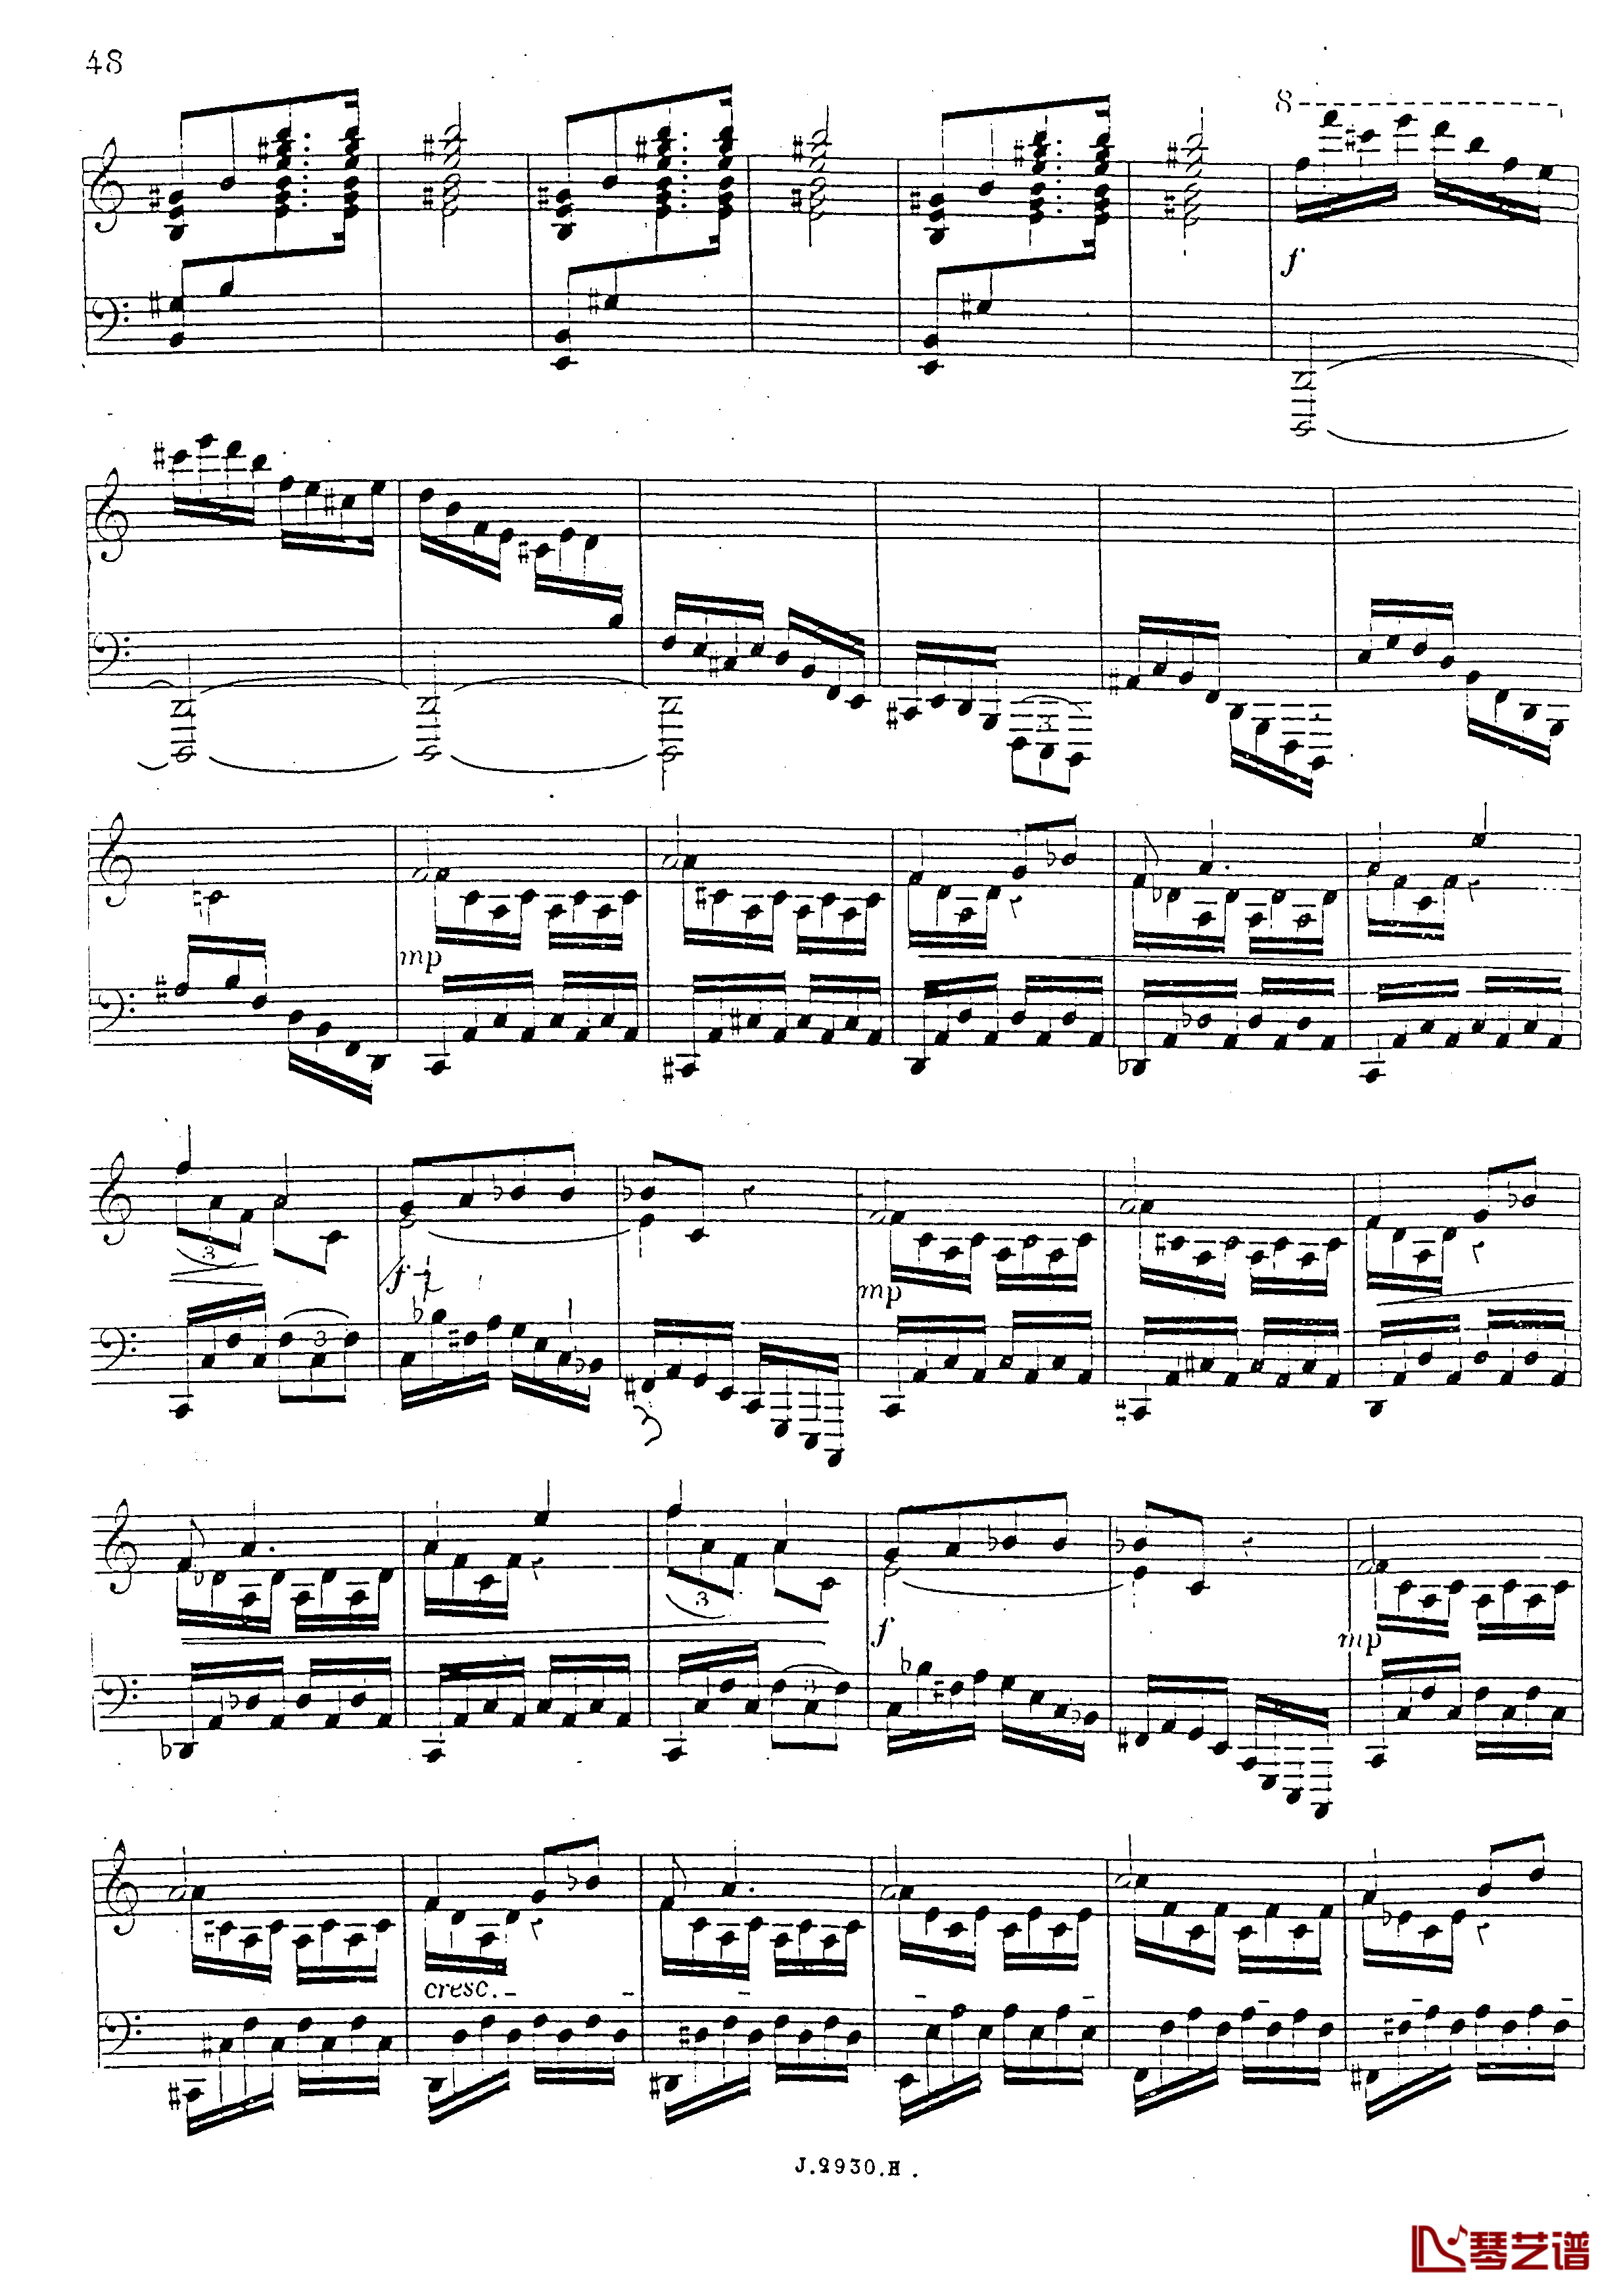 a小调第四钢琴奏鸣曲钢琴谱-安东 鲁宾斯坦- Op.10049